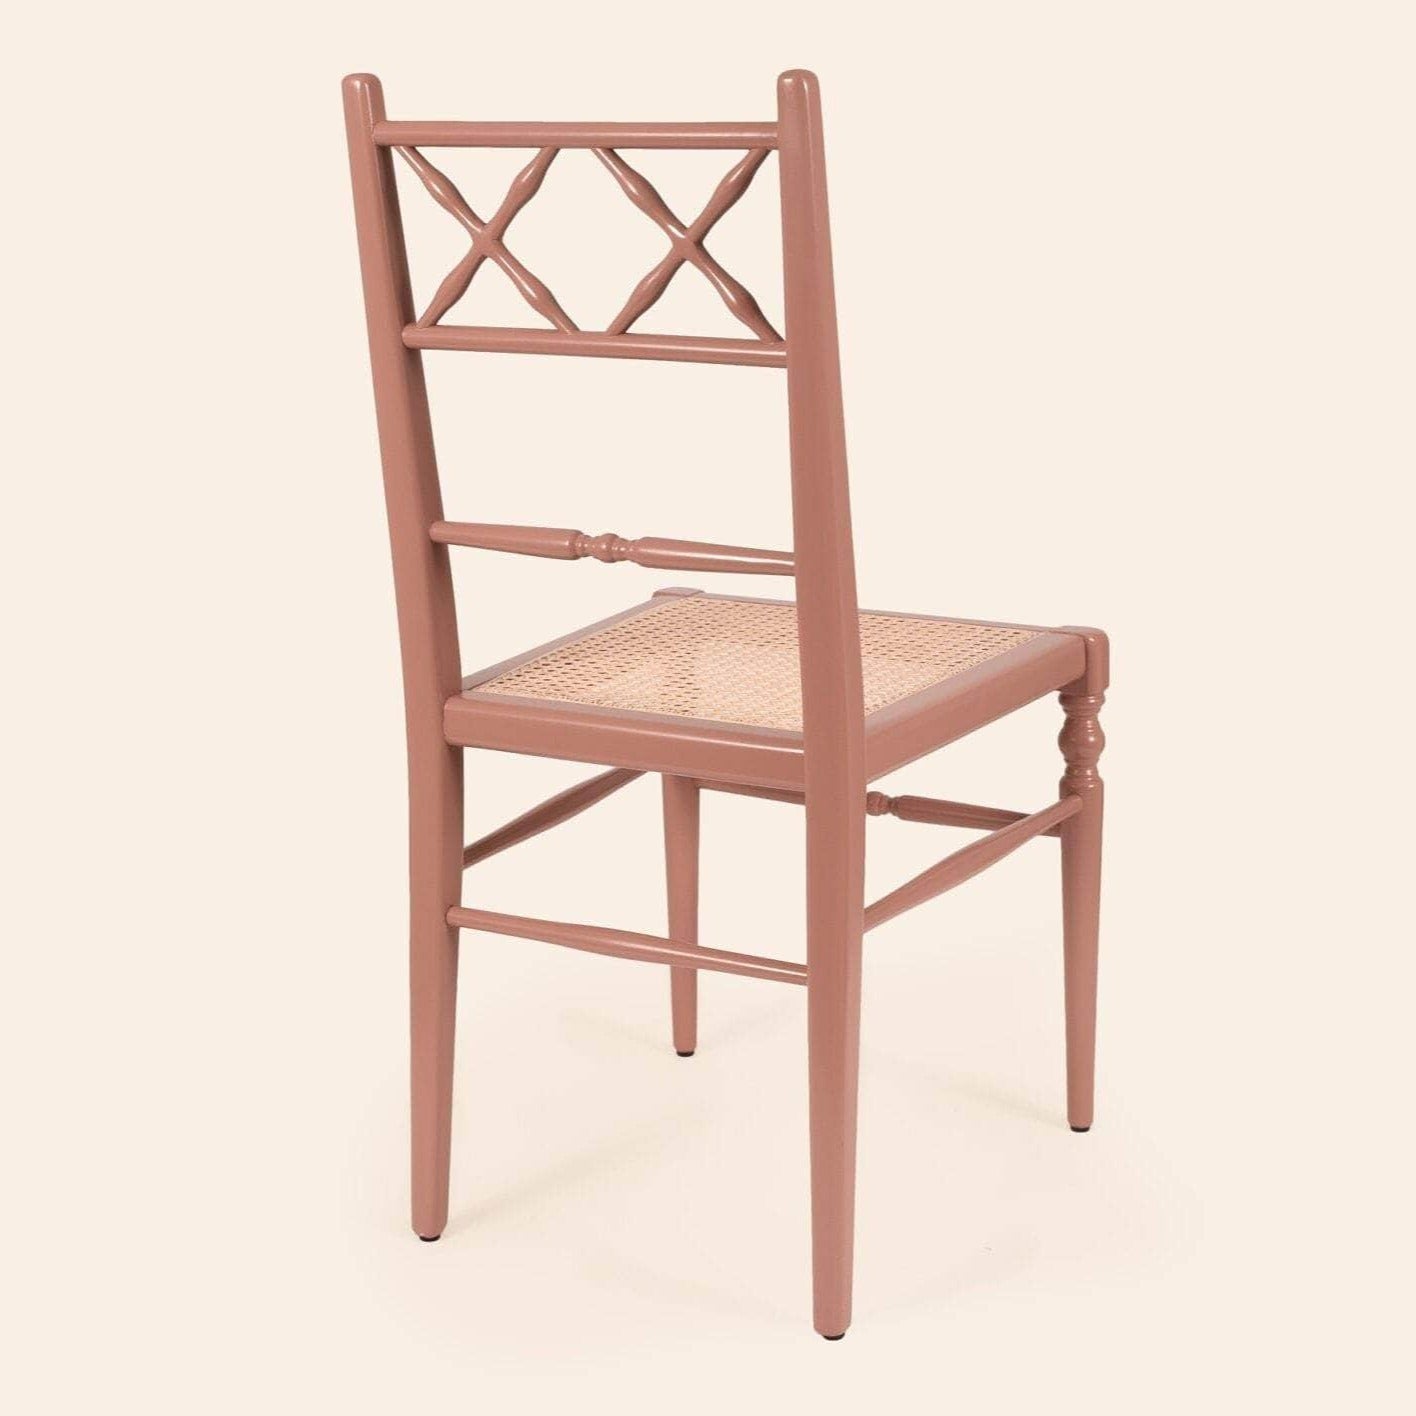 Pair of Chiara Dining Chairs, Terracotta